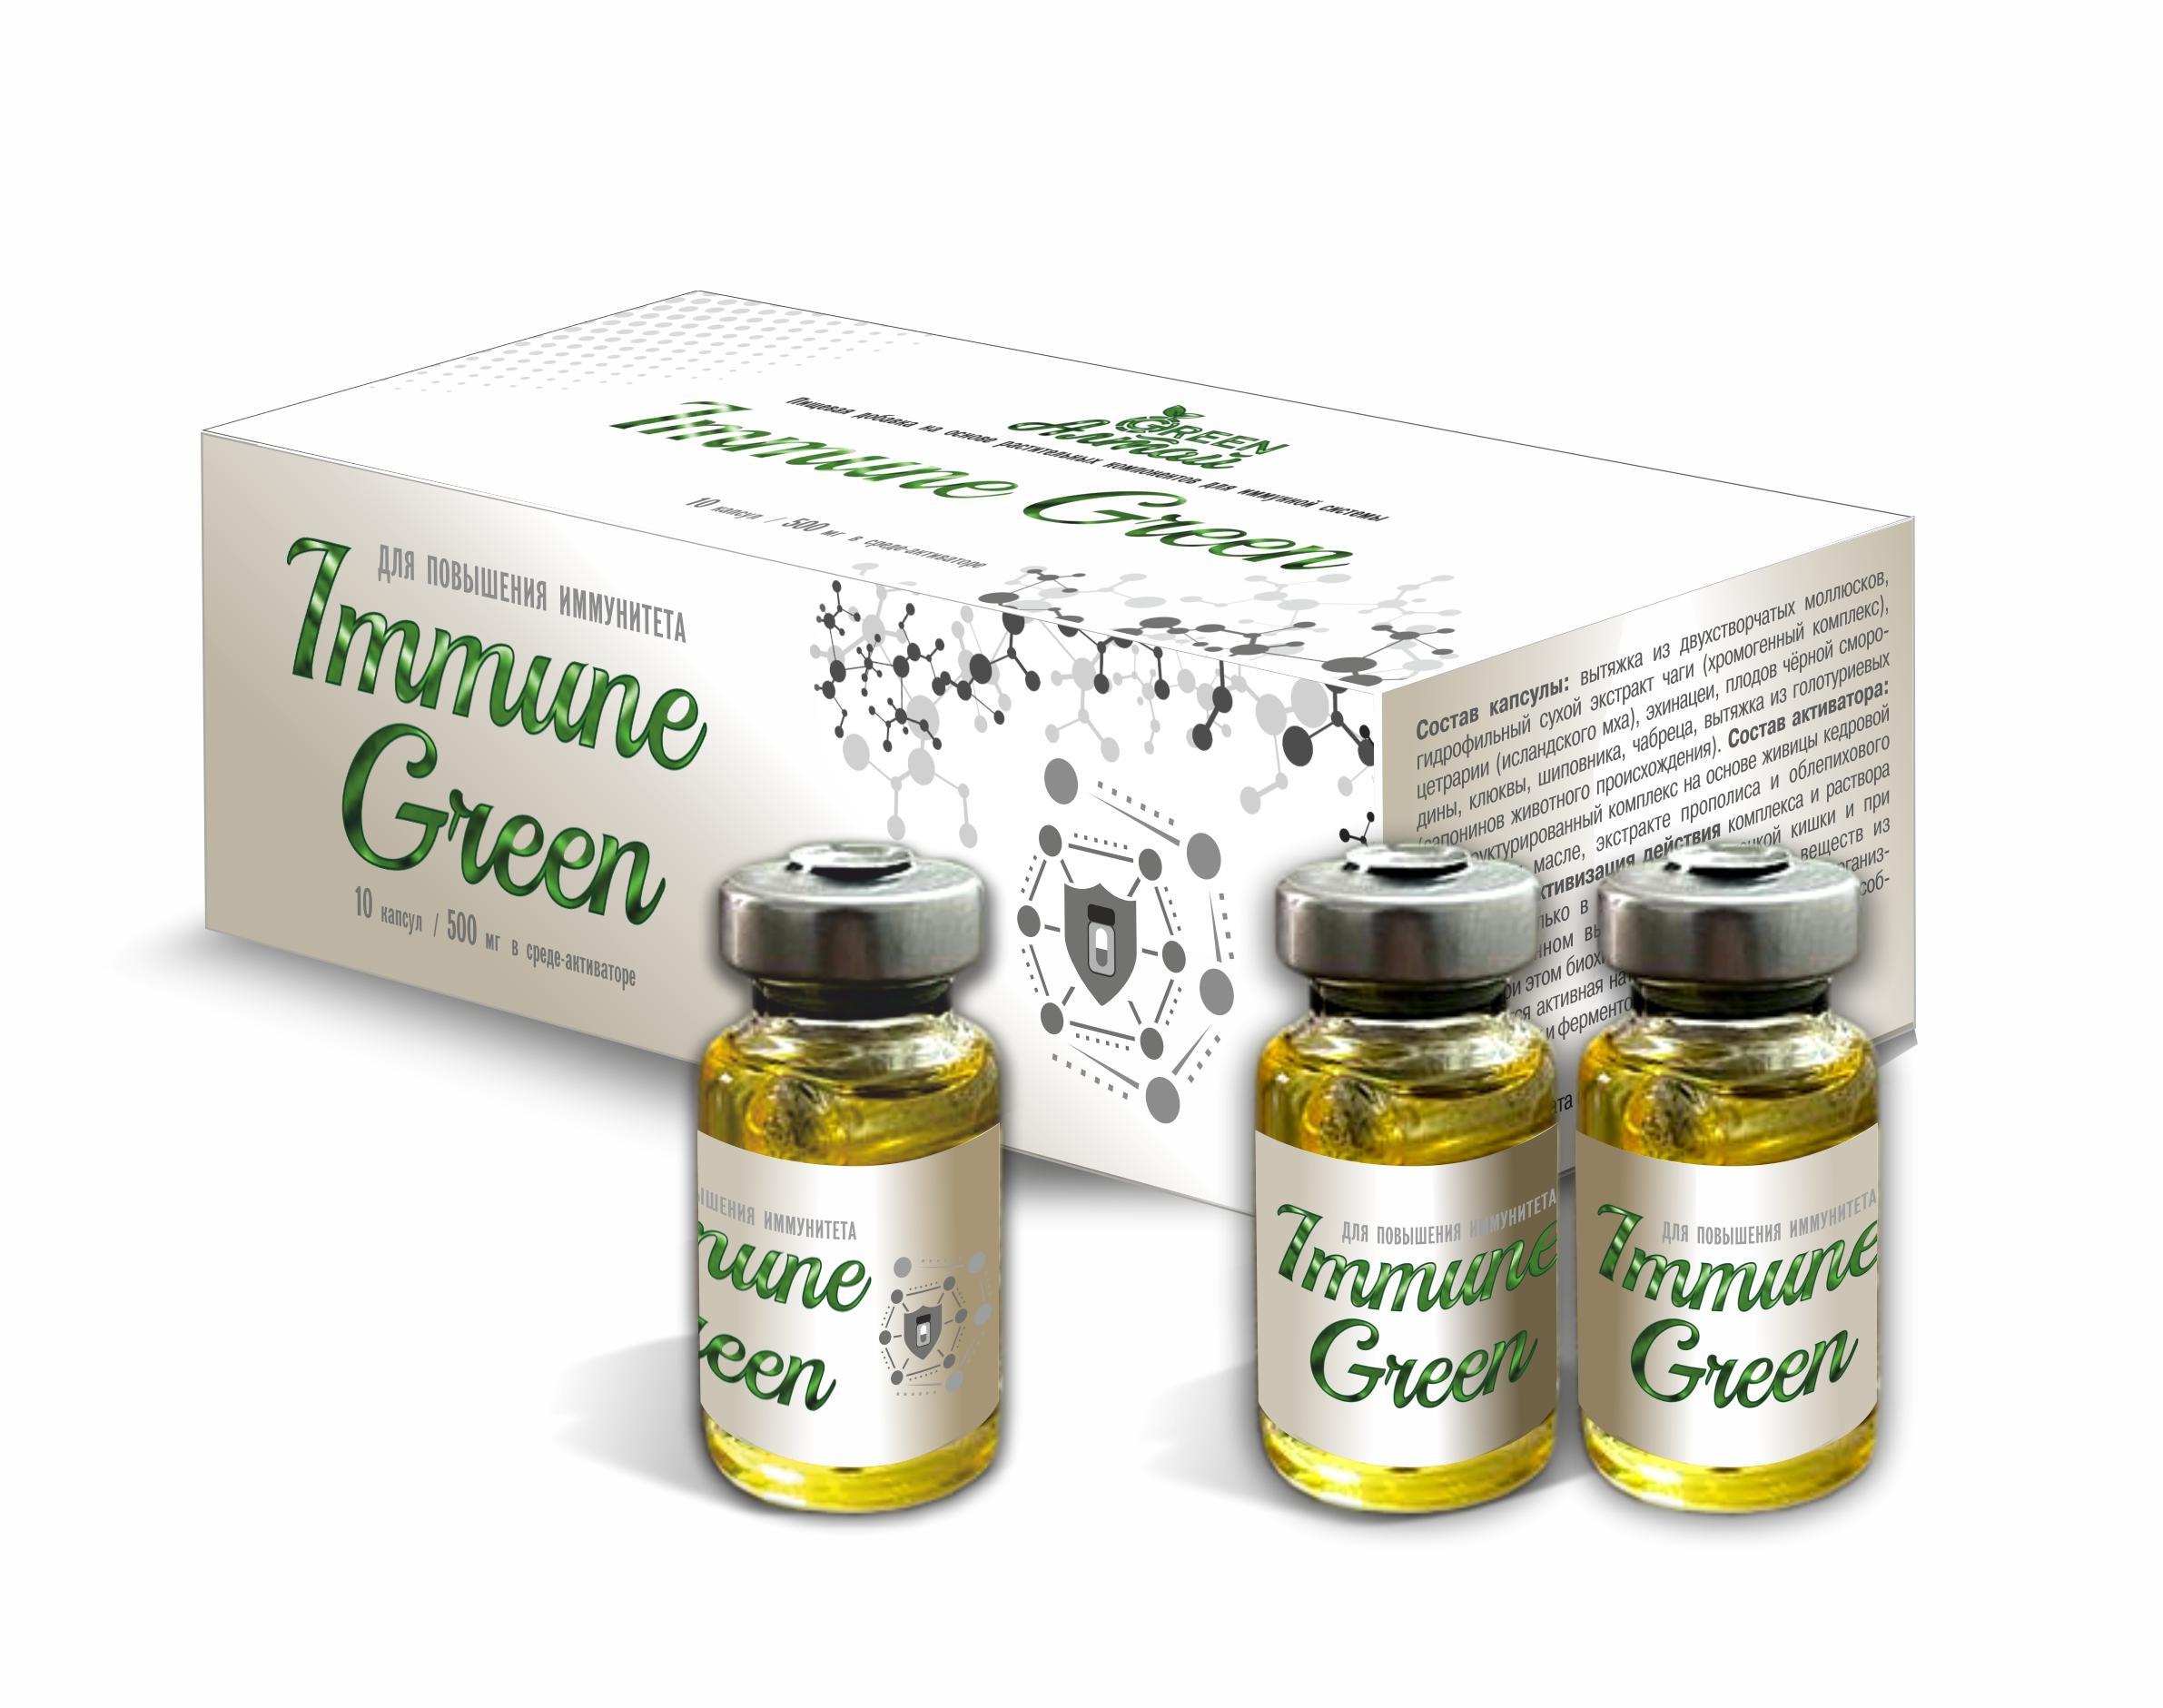 Immune Green Повышение иммунитета, капсула в среде-активаторе, 10 шт*500 мг, Амбрелла комплекс для суставов натуральный sustal капсула в среде активаторе 10 шт по 0 5 г